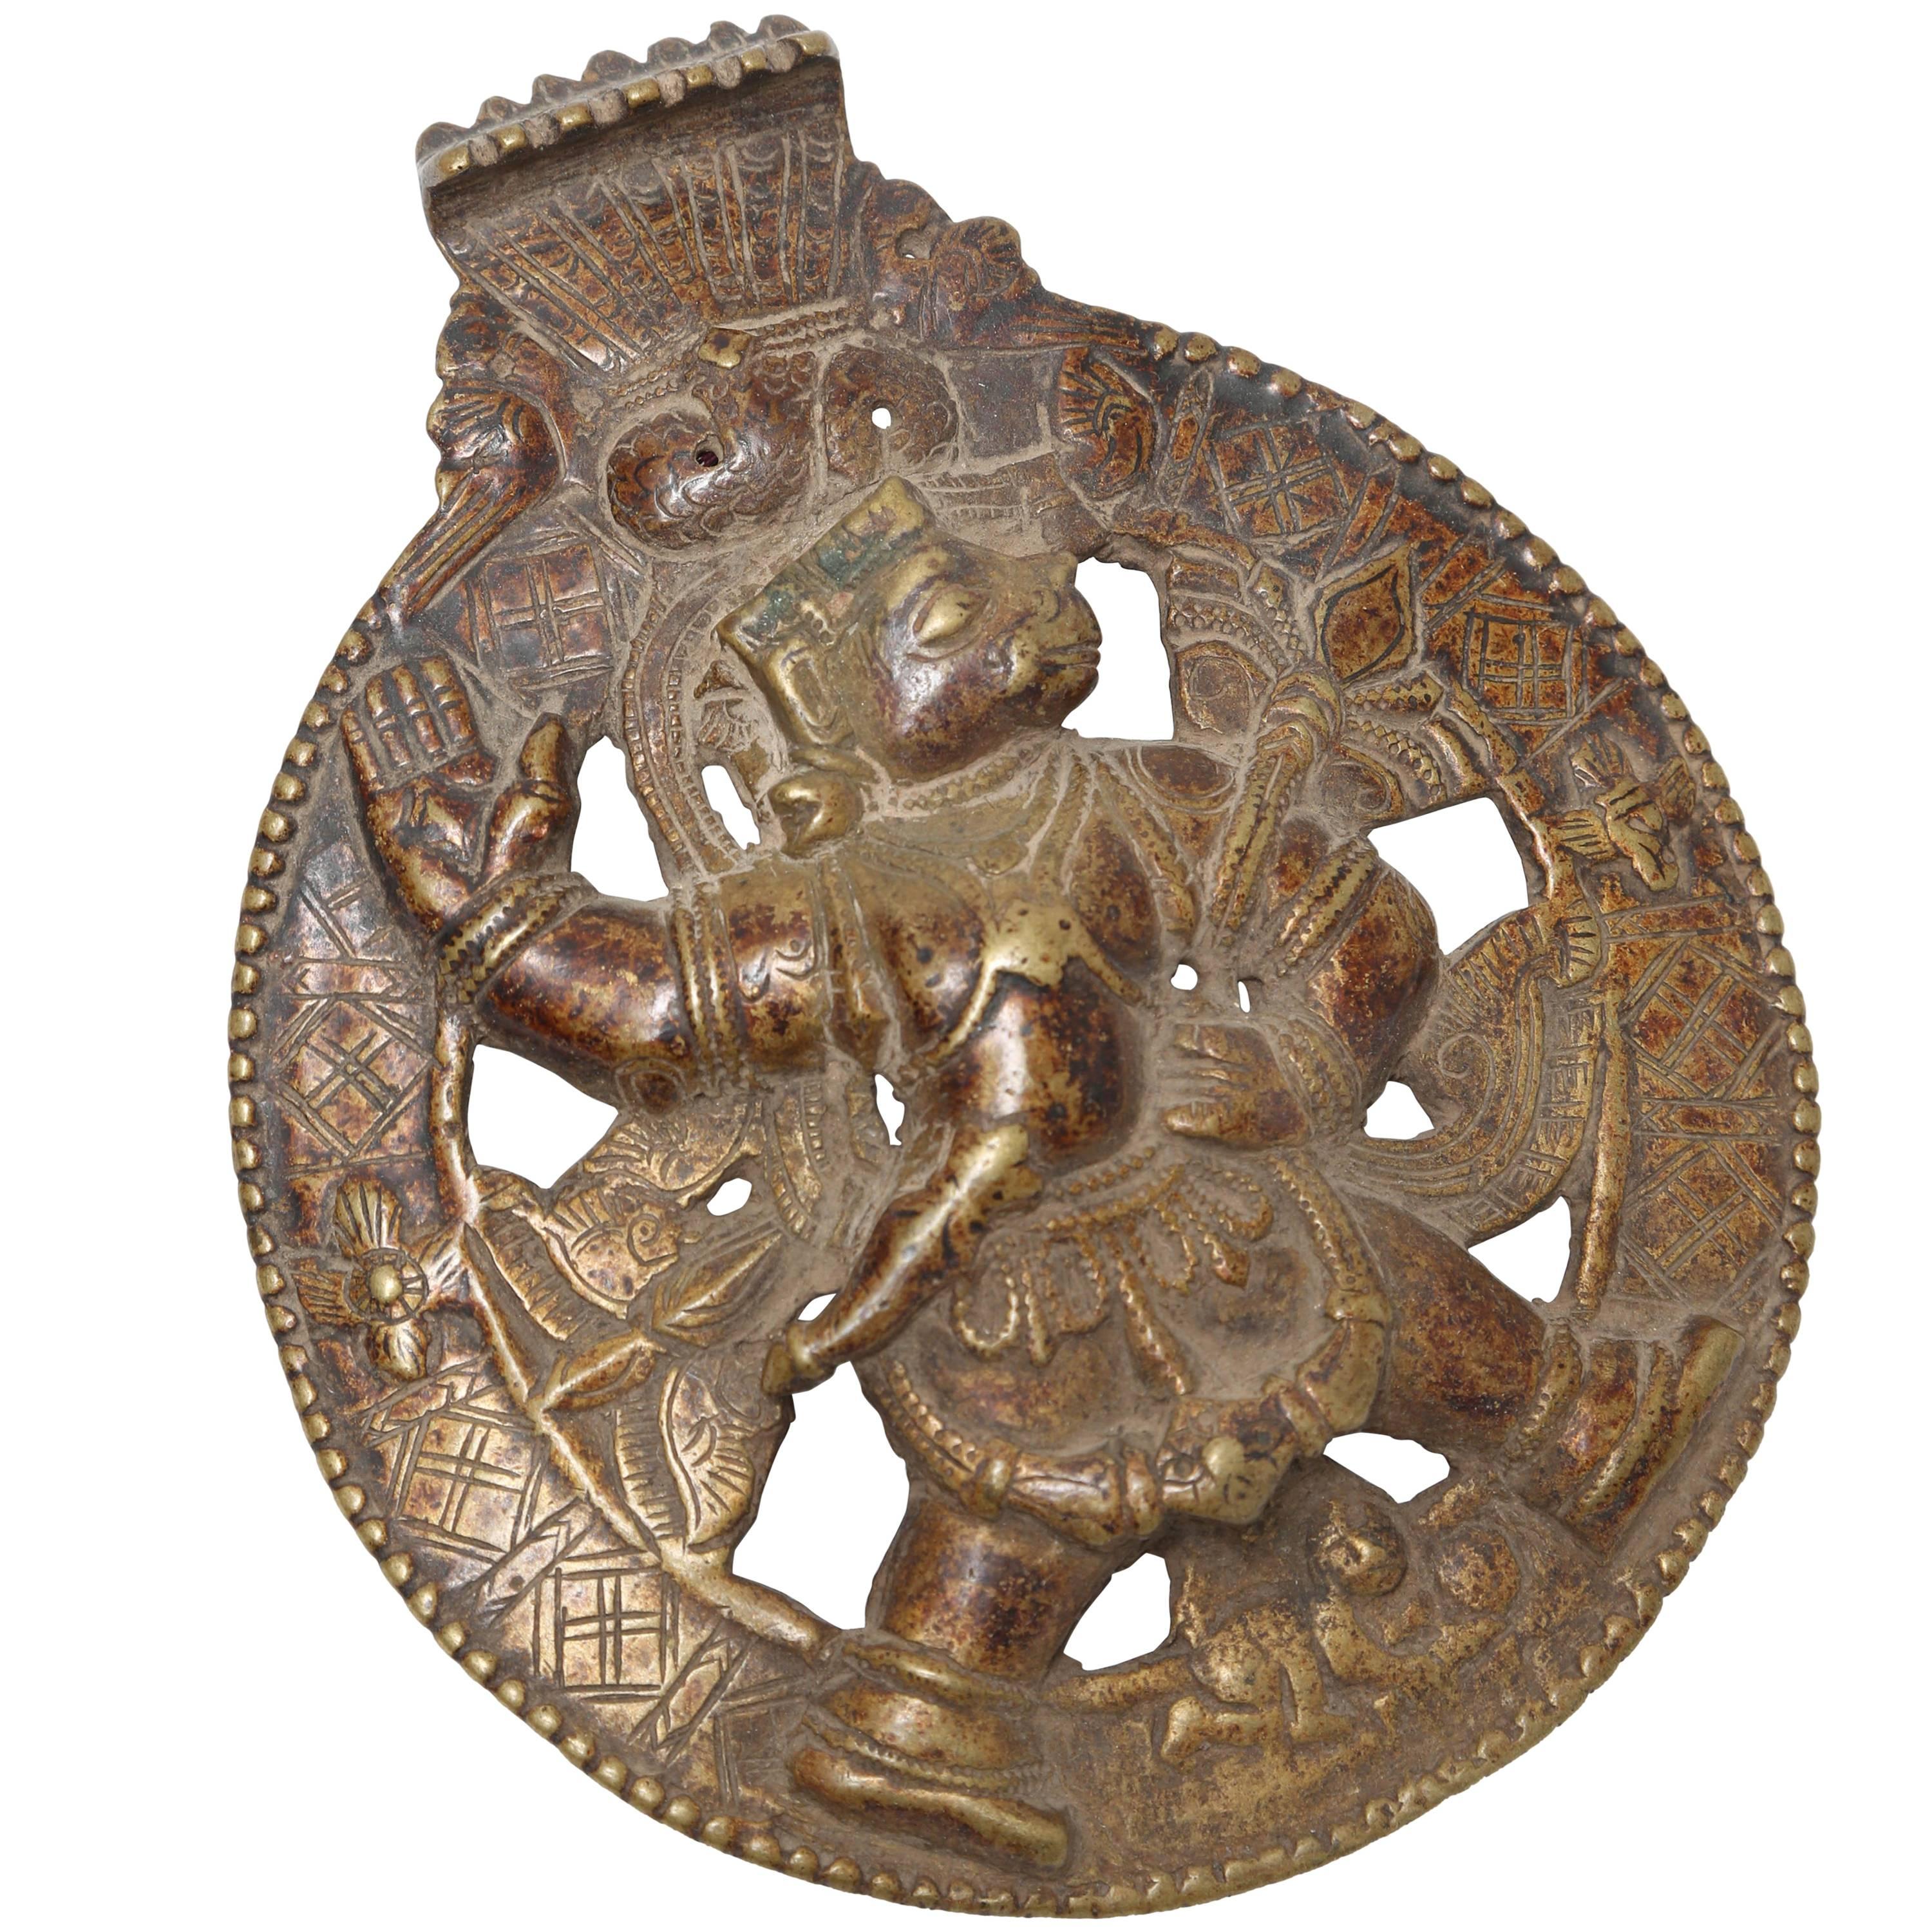 Rondelle en alliage de bronze et de cuivre représentant Hanuman, le dieu singe hindou